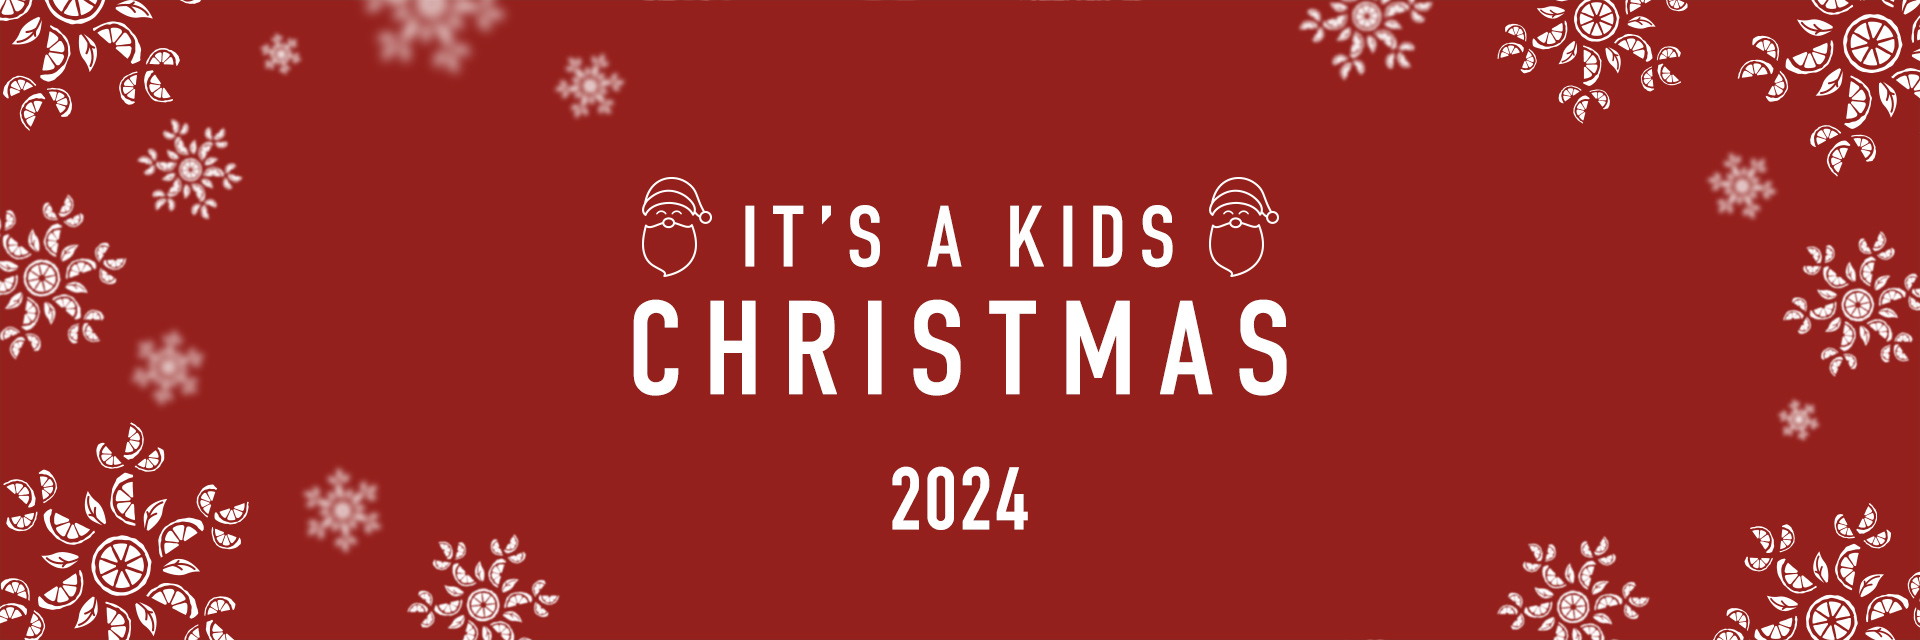 Kids Christmas Menu 2024 at The Royal